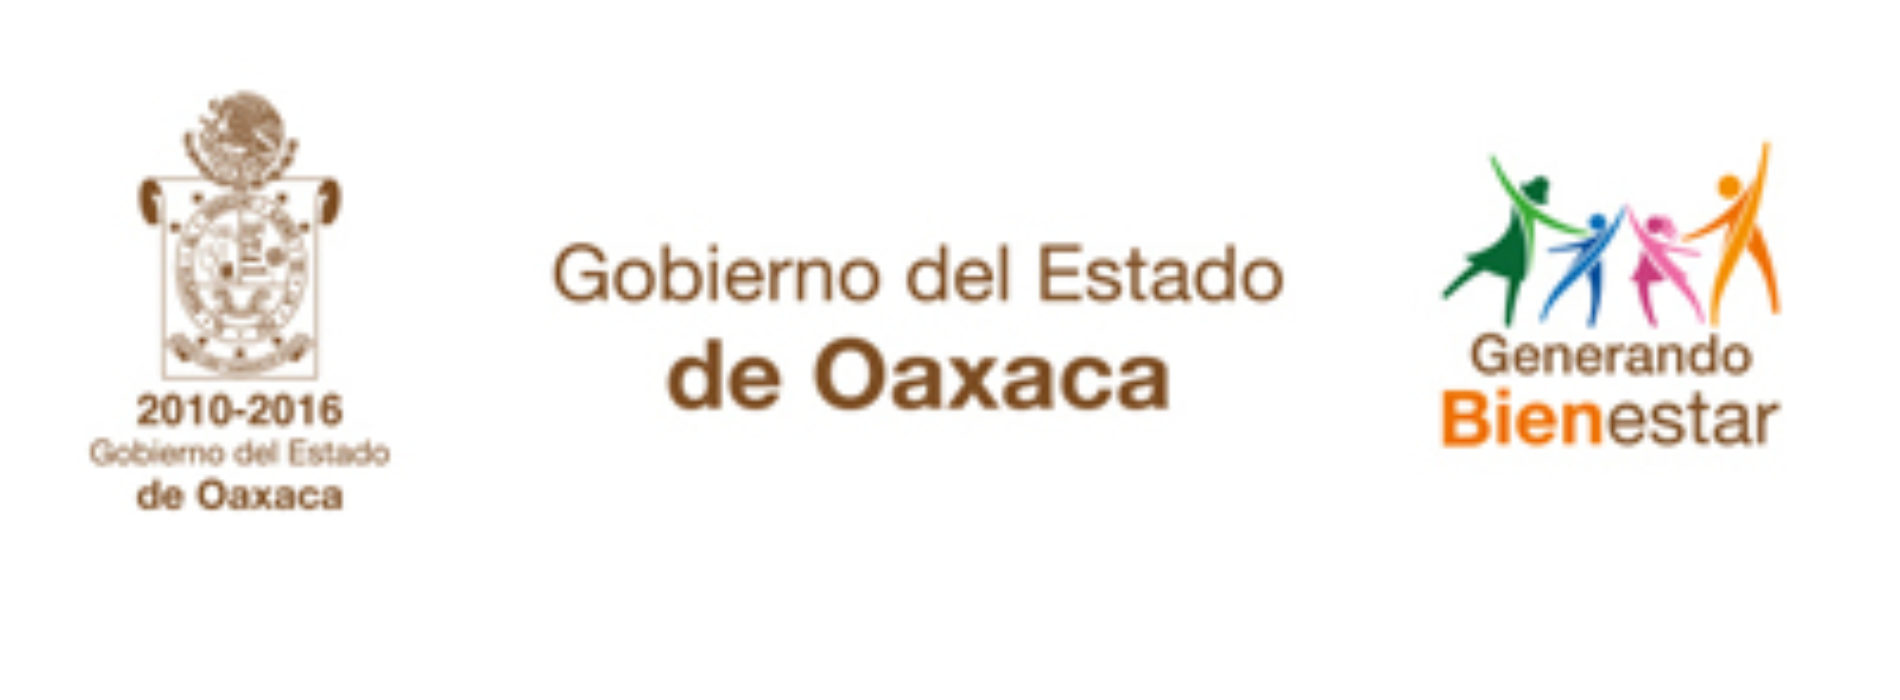 Reprueba Gobierno de Oaxaca actos de confrontación que afectan a la población